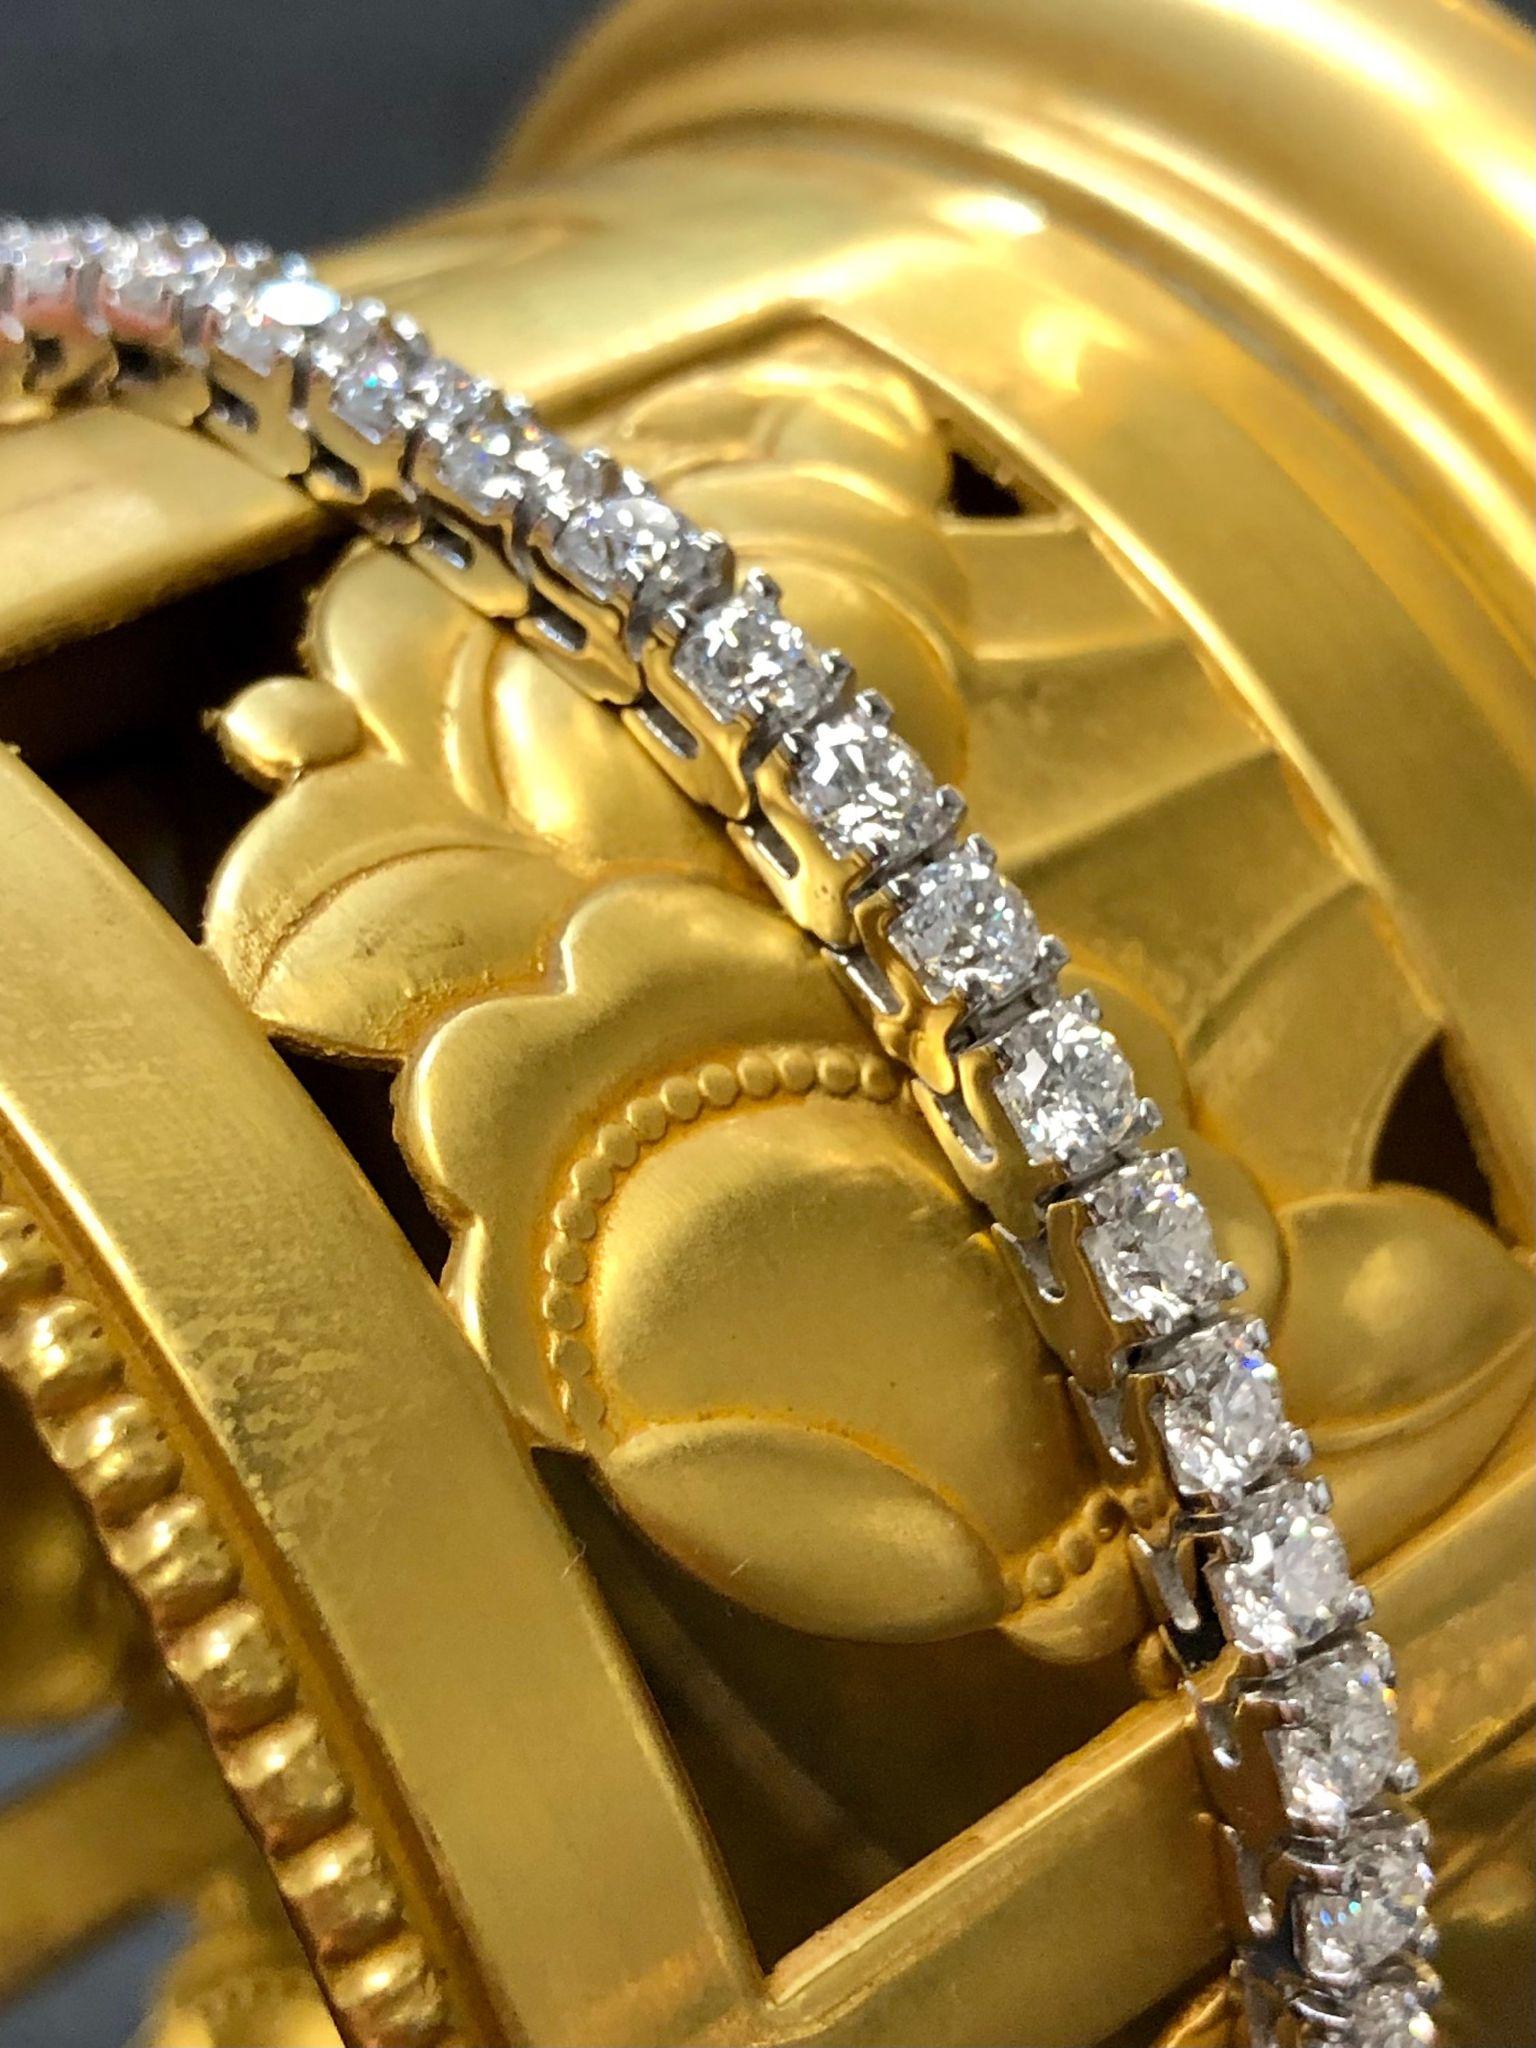 Ein klassisches Tennisarmband aus 14-karätigem Weißgold, besetzt mit 42 runden Diamanten im Vollschliff mit einer Farbe von G-I und einer Reinheit von Si1-2 mit einem Gesamtgewicht von ca. 7,15cttw.

Abmessungen
2,72 mm breit und 6,75